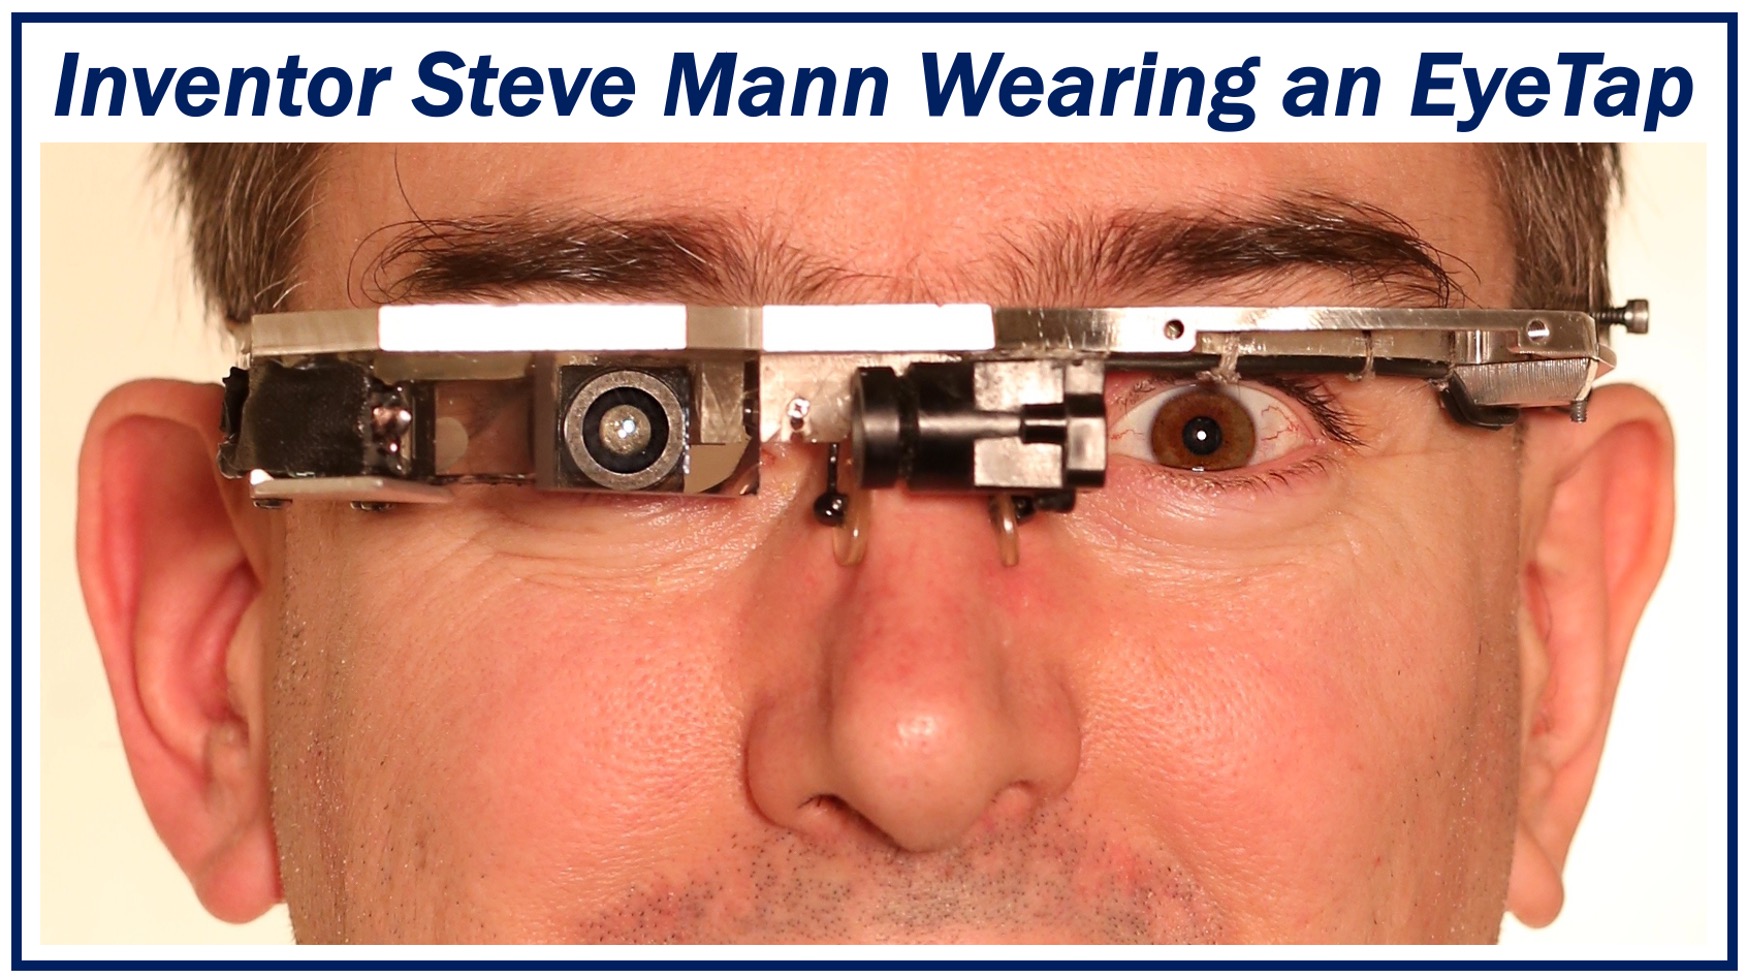 Steve Mann wearing an EyeTap - a wearable computer